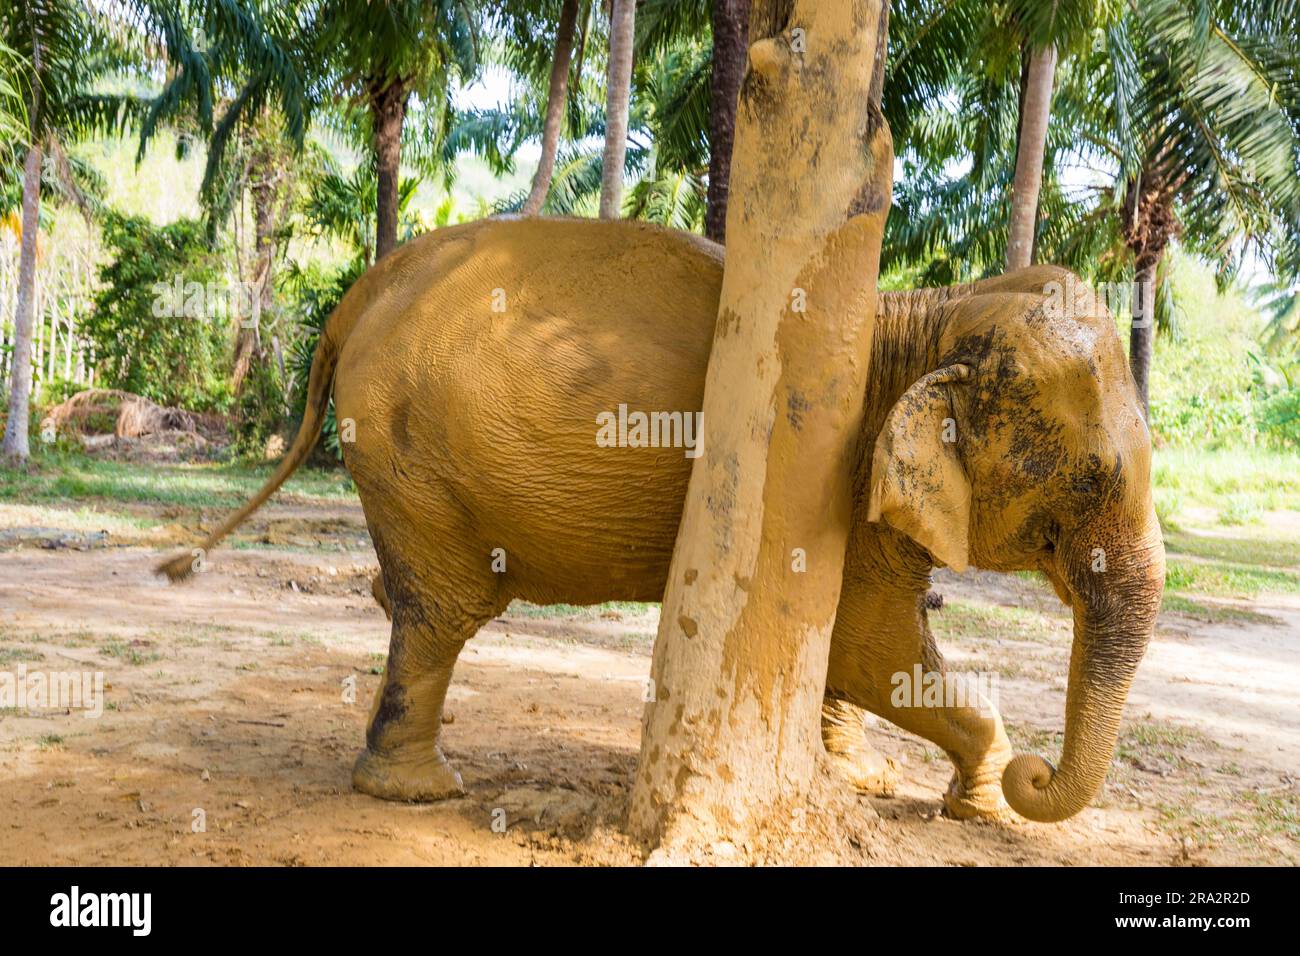 Thaïlande, province de Krabi, île de KohLanta yai, sanctuaire d'éléphants de Lanta, éléphant frottant contre un arbre Banque D'Images